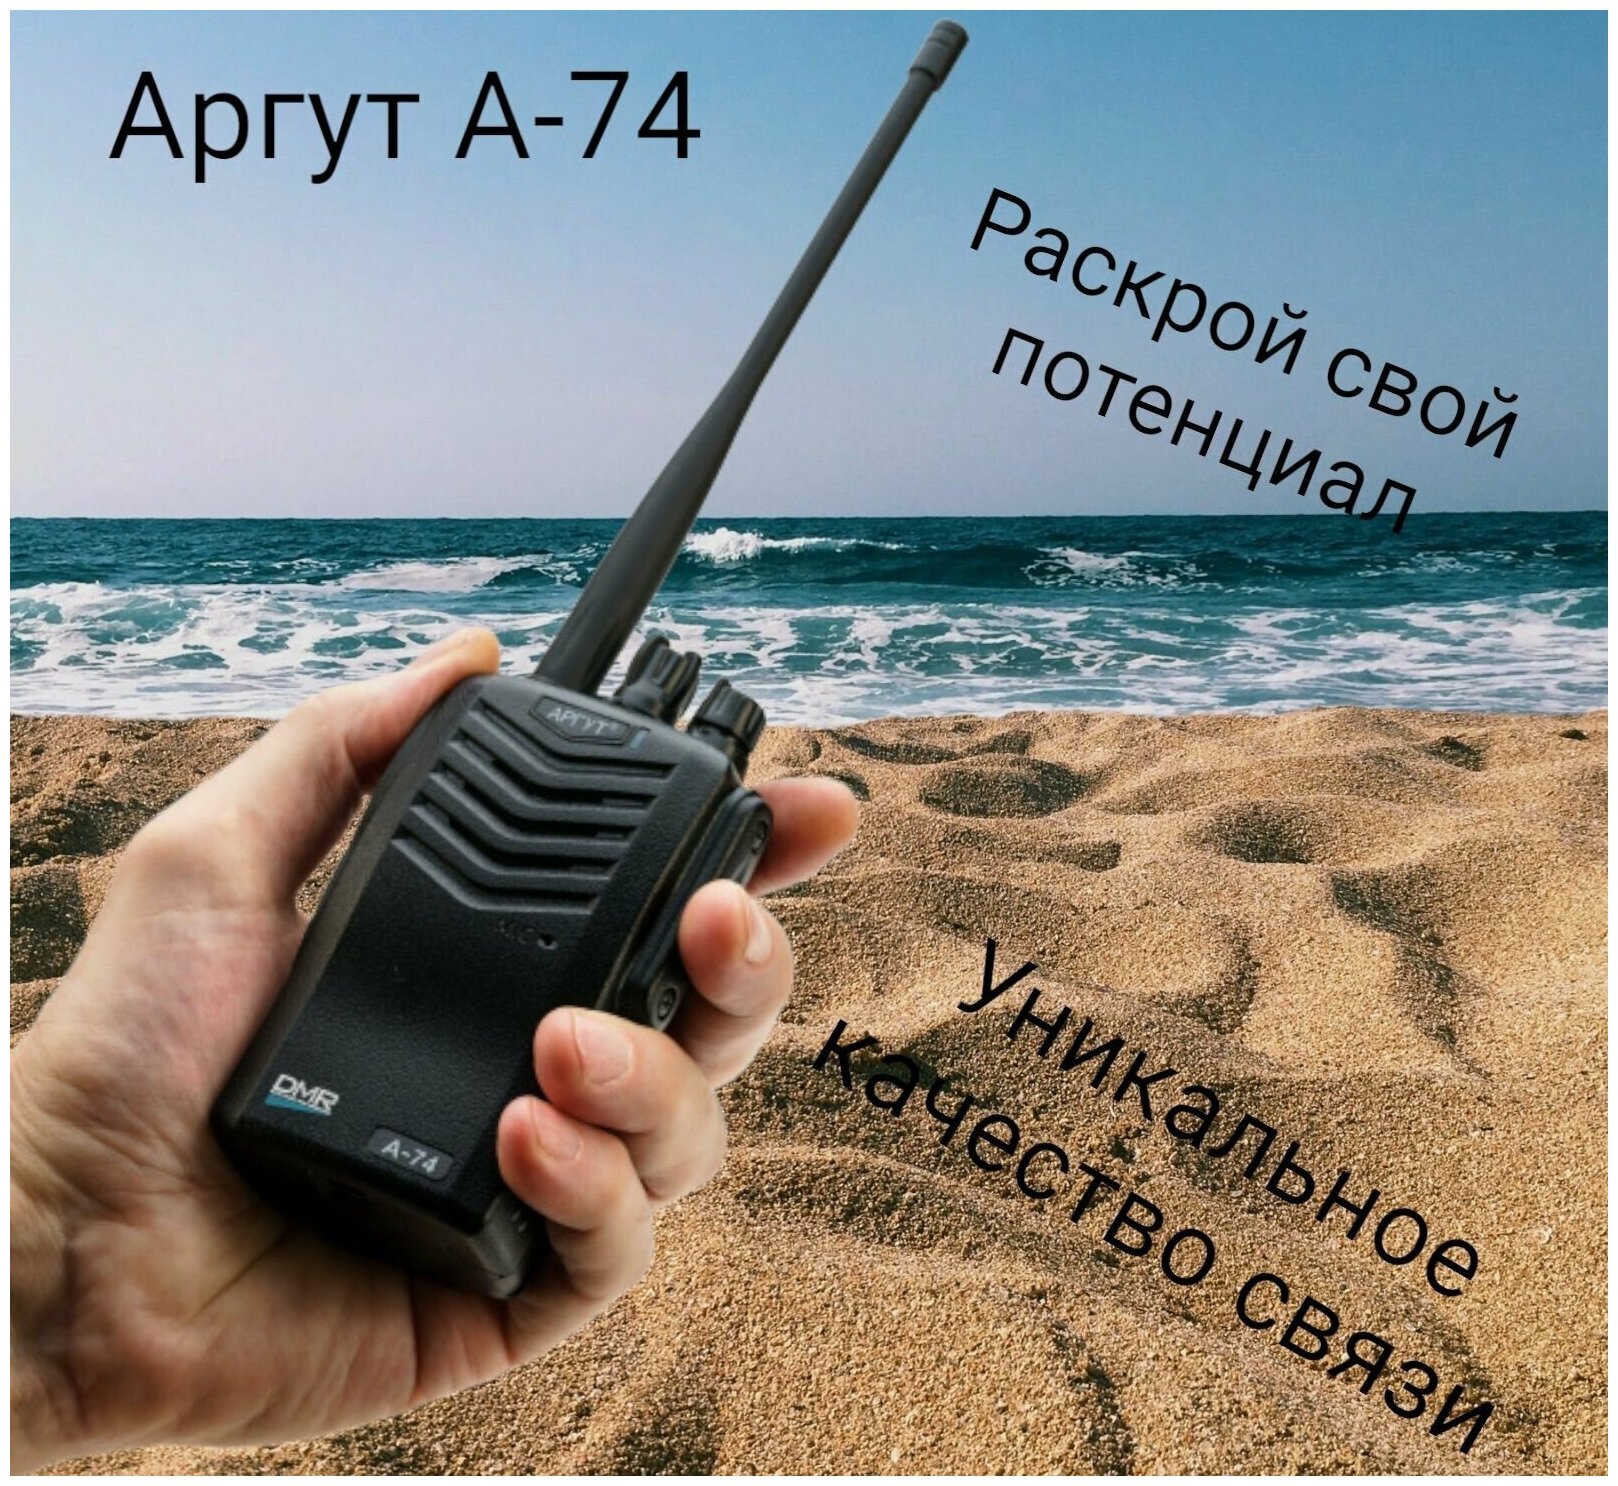 Радиостанция Аргут А 74 рация DMR